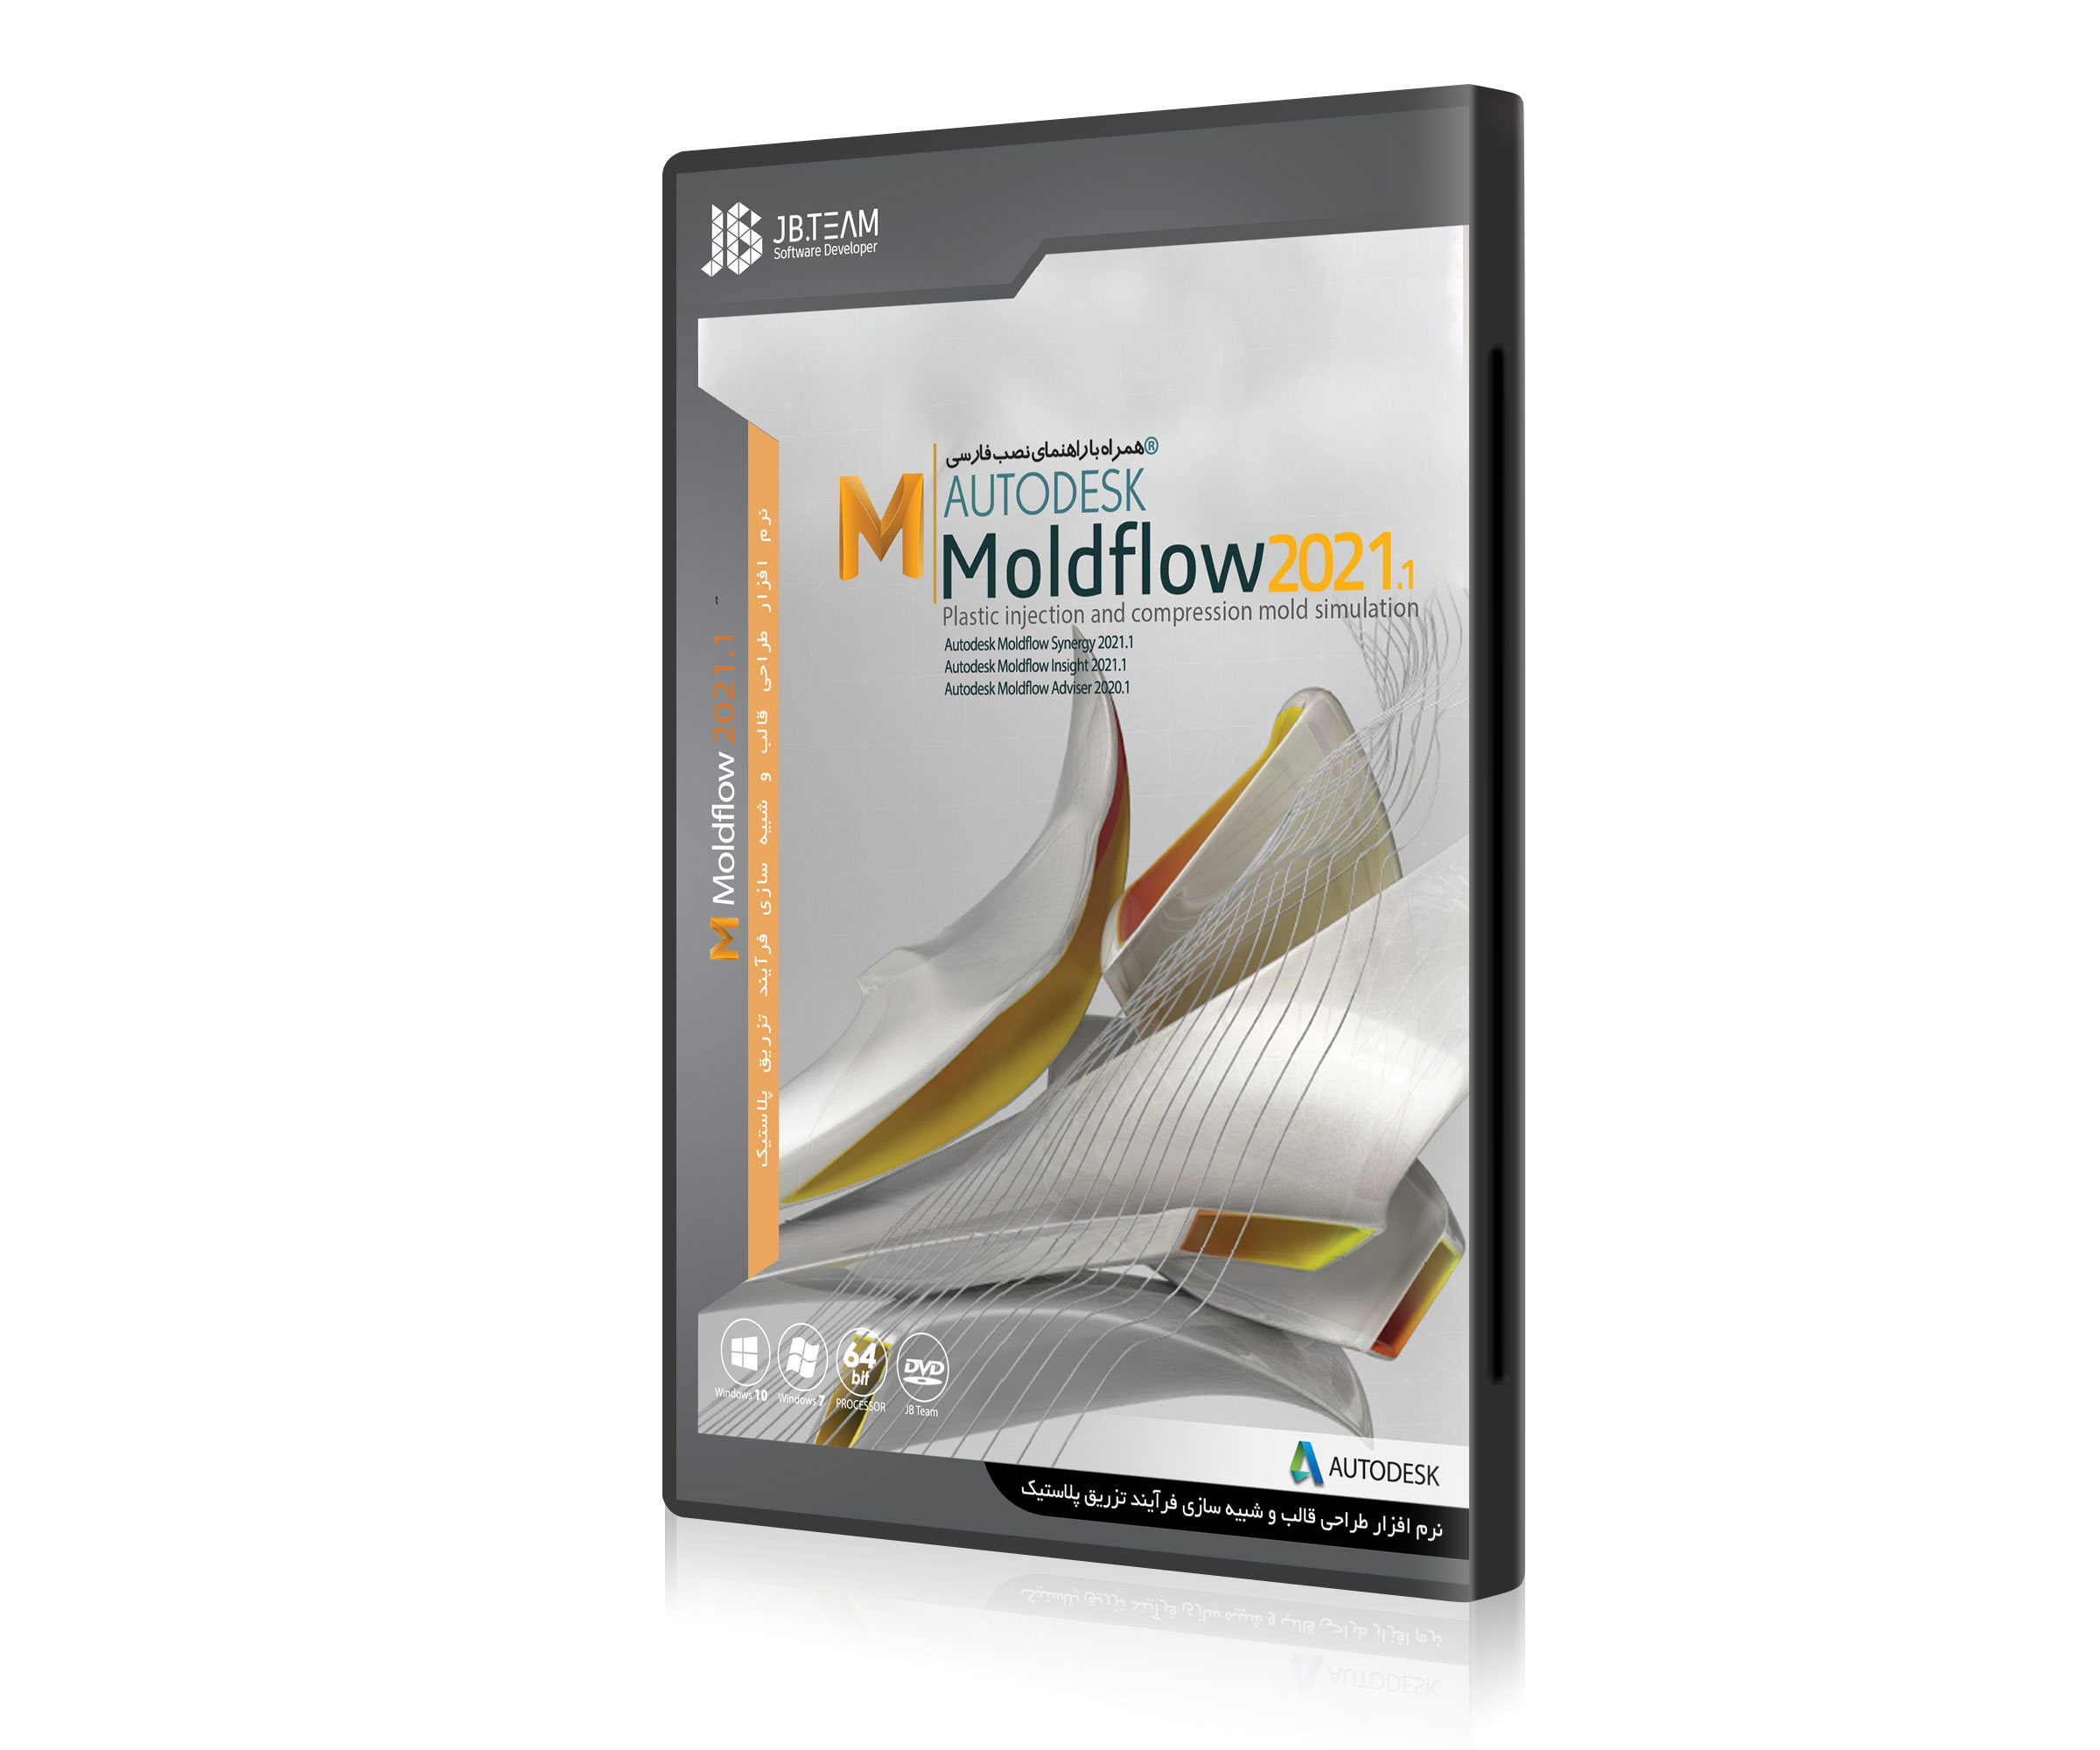 Moldflow 2021